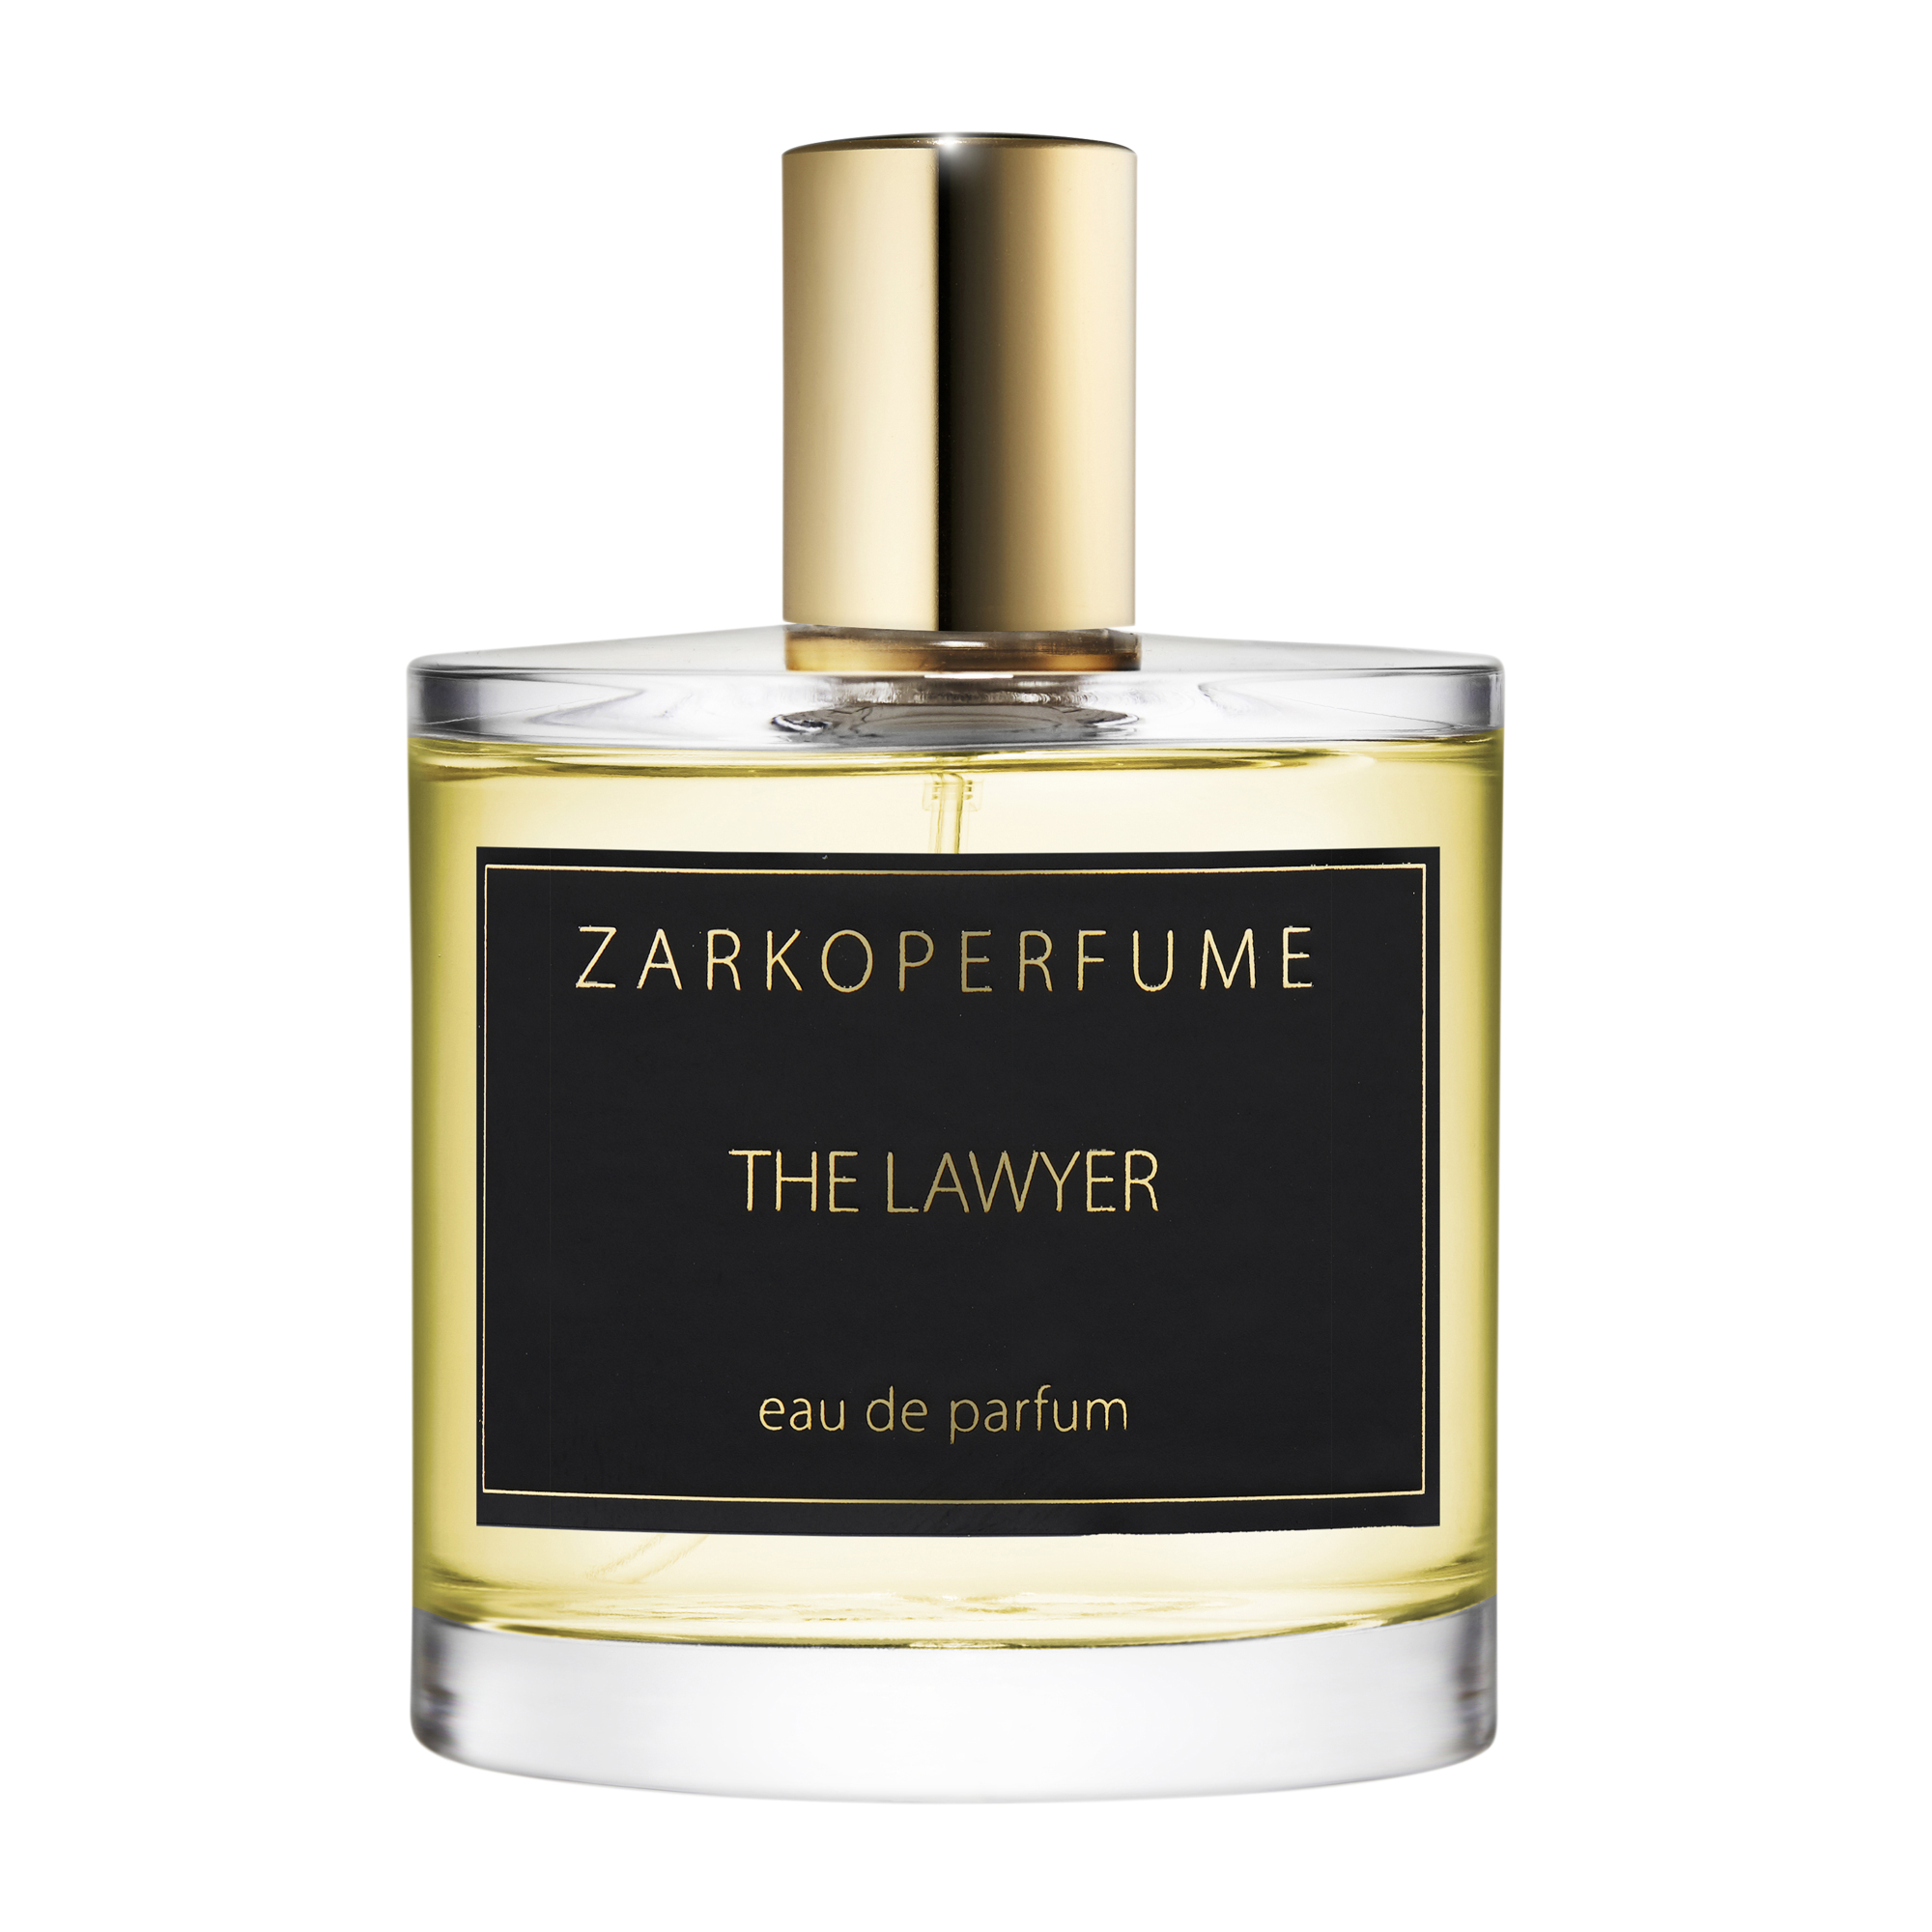  The Lawyer Eau de Parfum